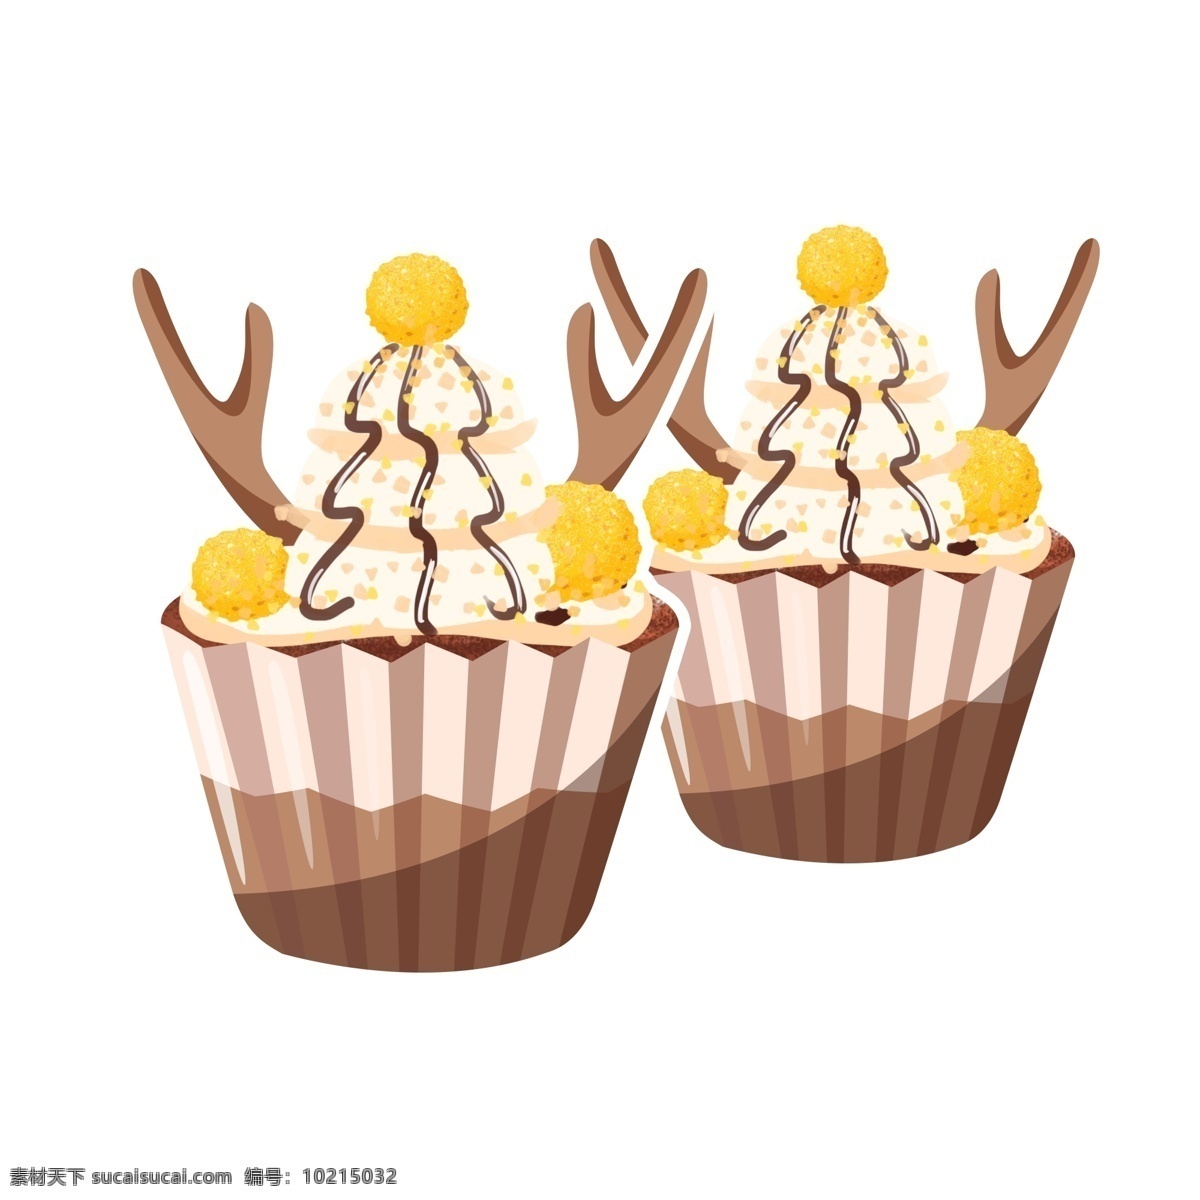 美食 甜品 深秋 鹿角 蛋糕 商用 chocolate cupcake 矢量 卡通 巧克力 杯蛋糕 奶油